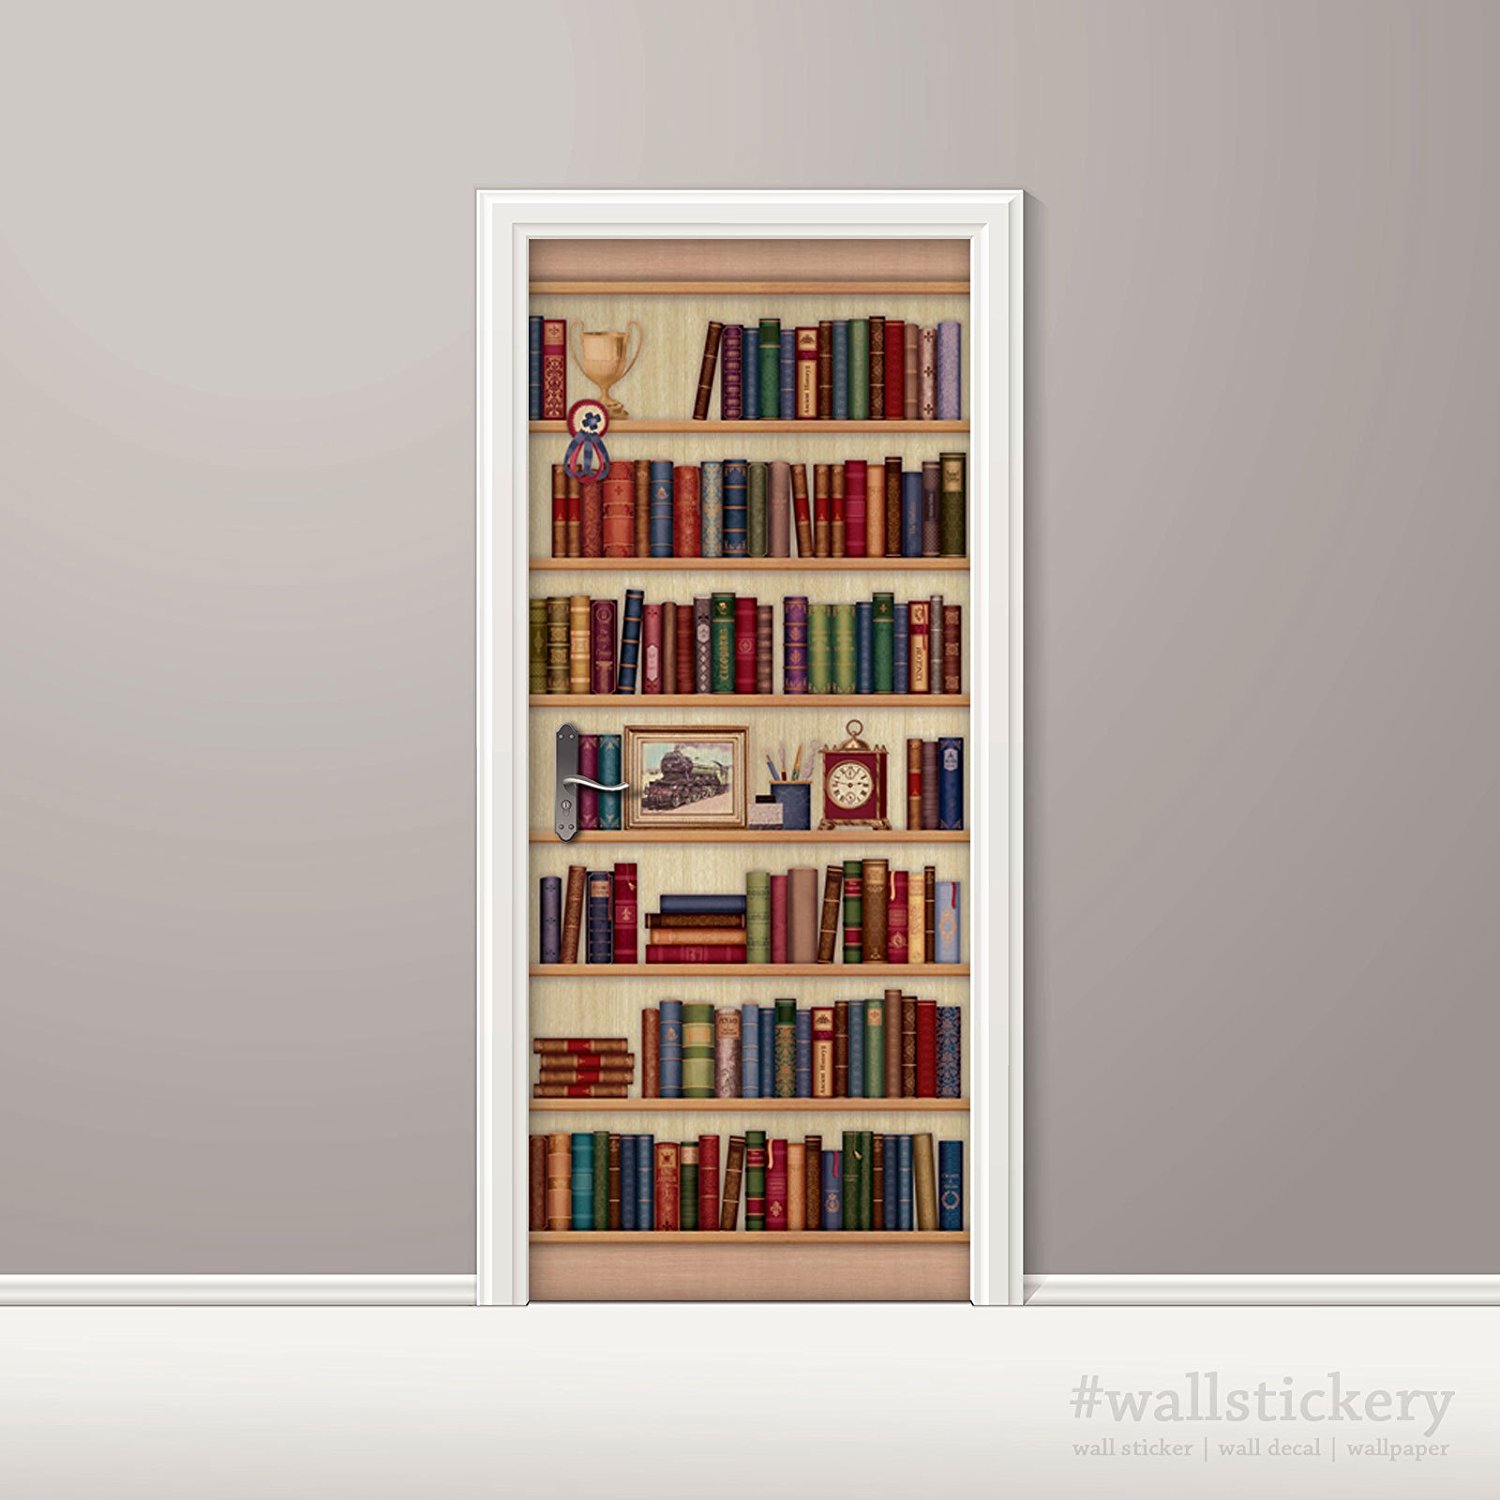 Wallstickery Door Wall Sticker Faux Bookshelf